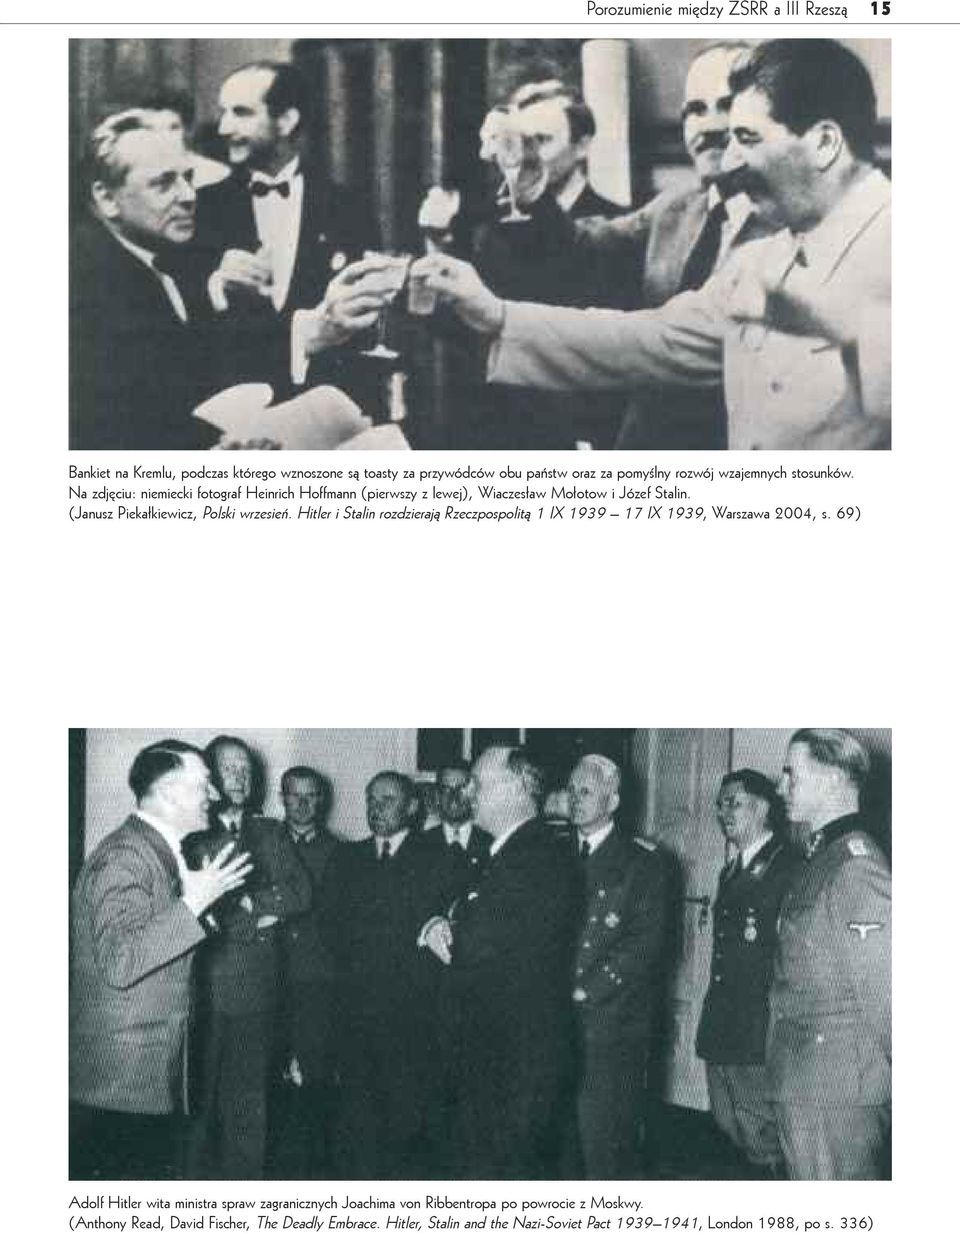 (Janusz Piekałkiewicz, Polski wrzesień. Hitler i Stalin rozdzierają Rzeczpospolitą 1 IX 1939 17 IX 1939, Warszawa 2004, s.